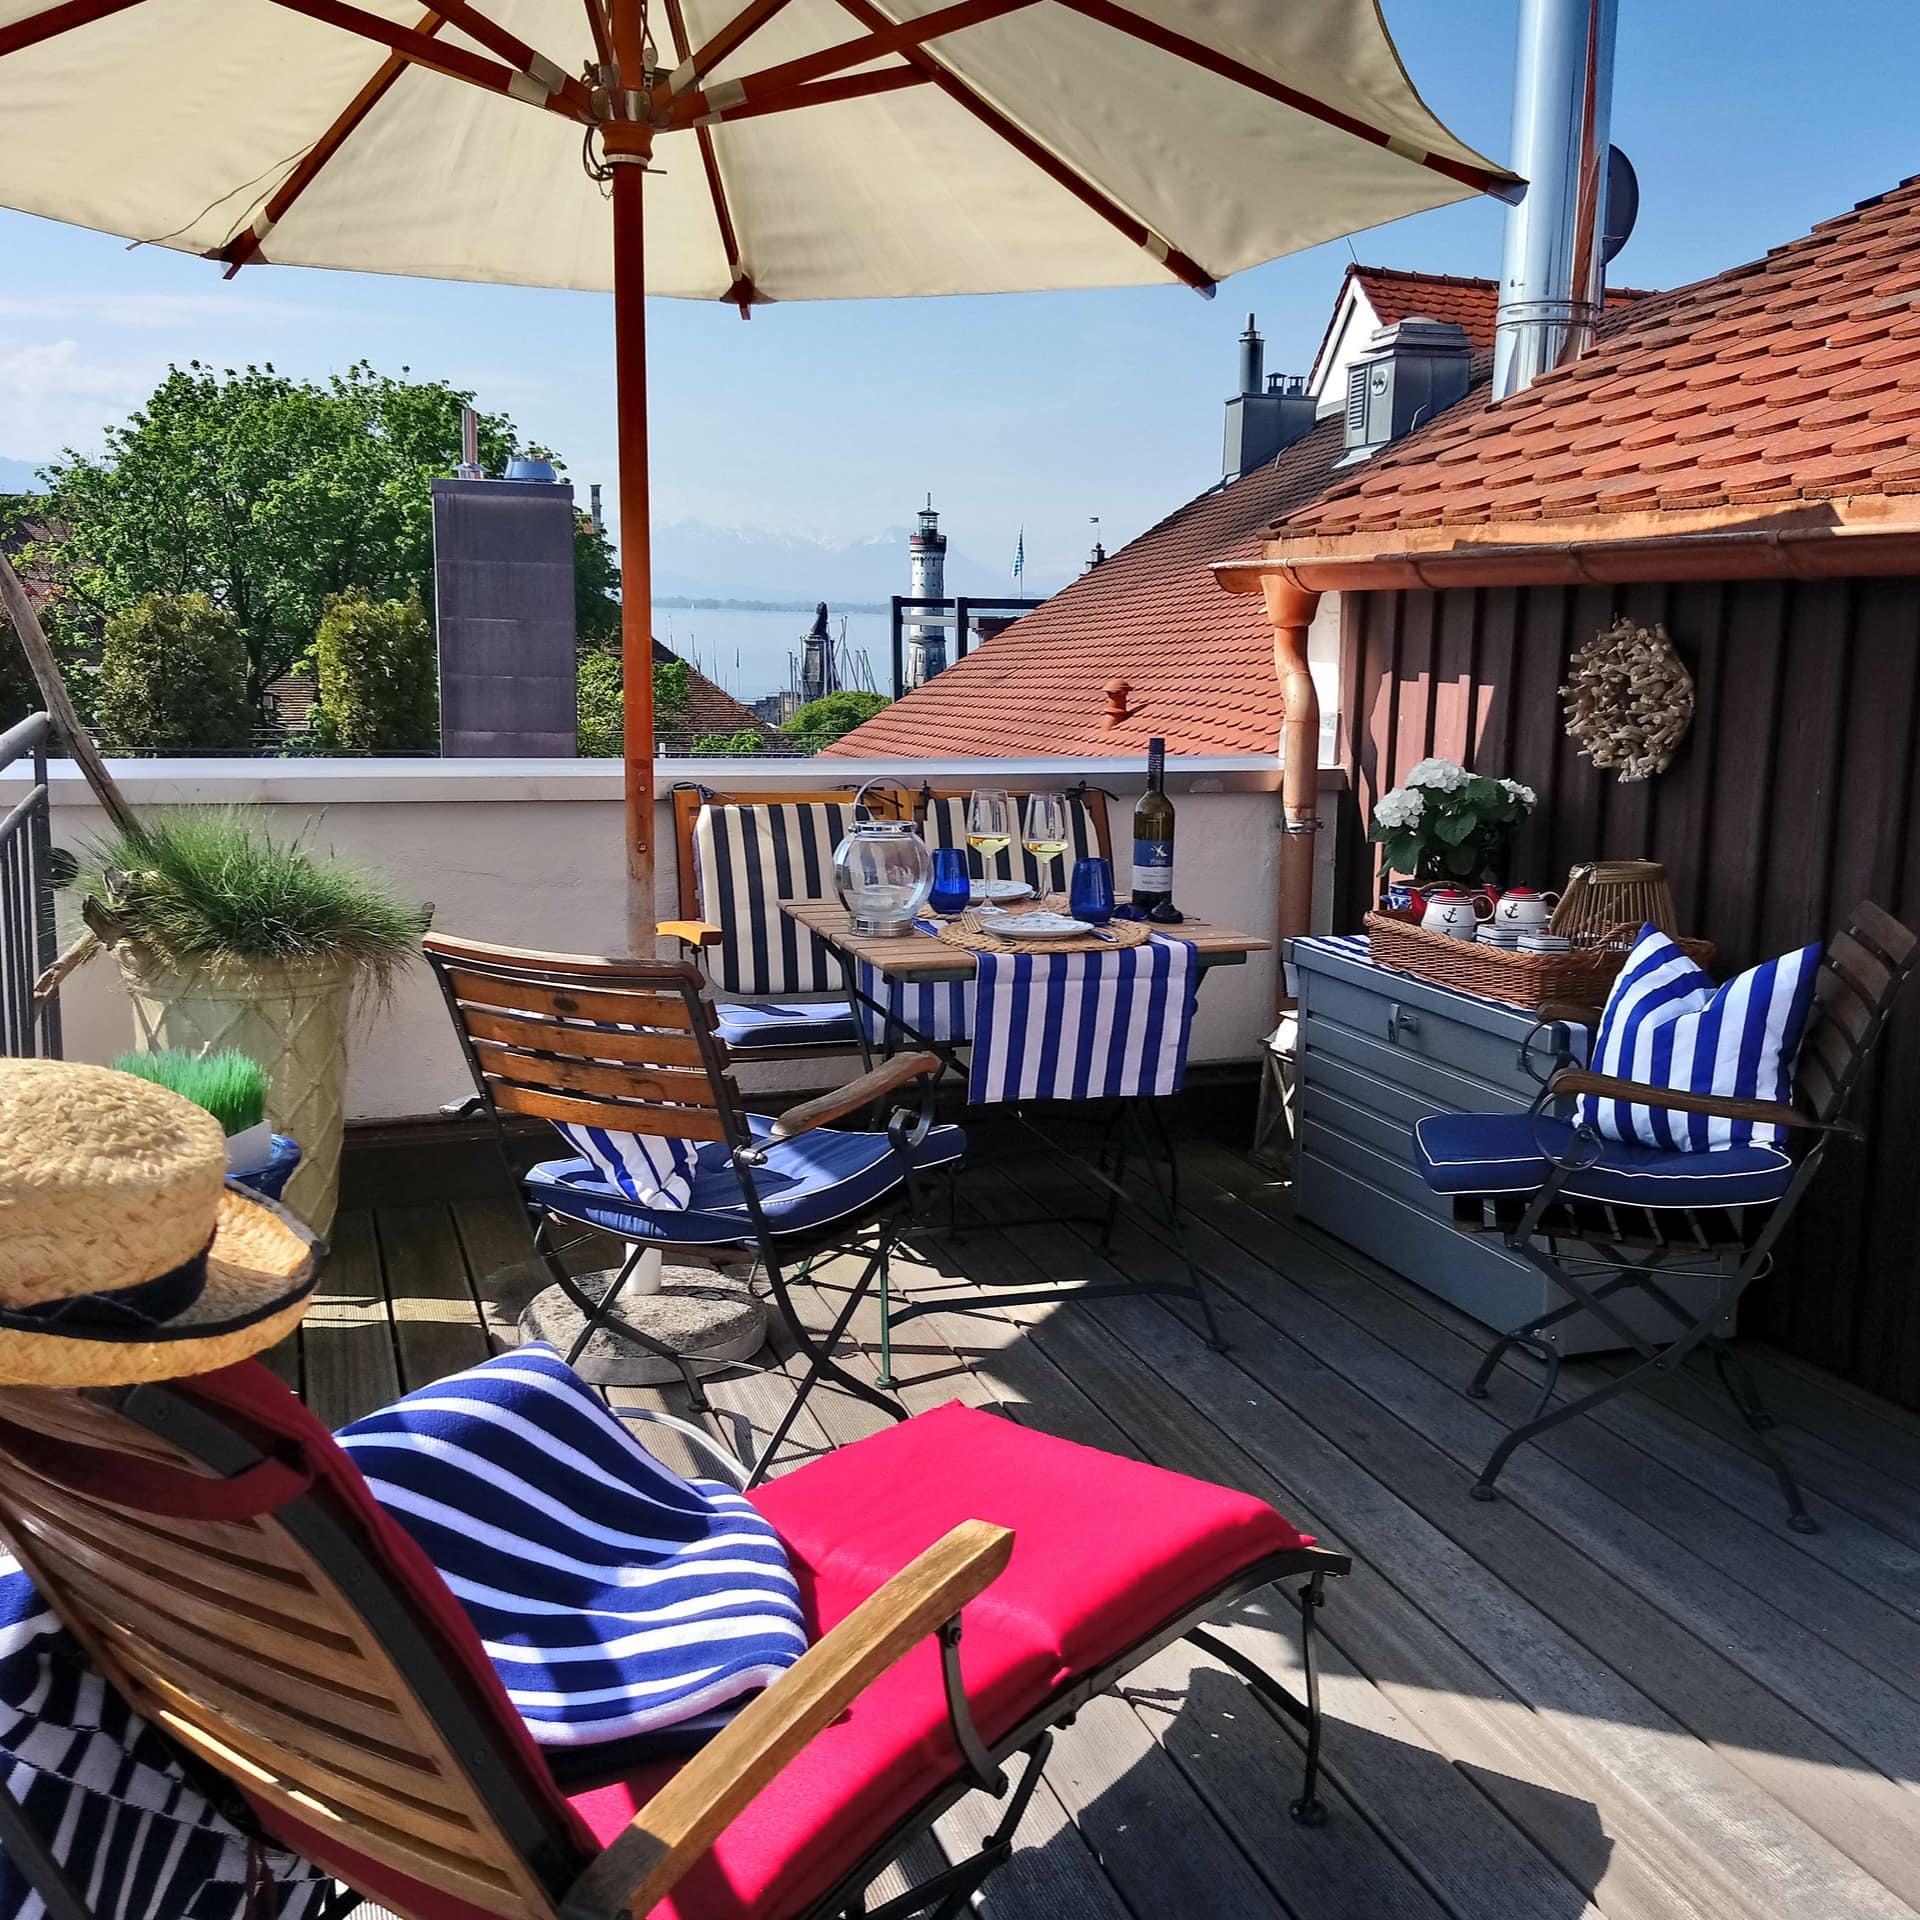 Dachterrasse mit Sitzgelegenheiten und Seeblick einer Ferienwohnung auf der Insel Lindau am Bodensee